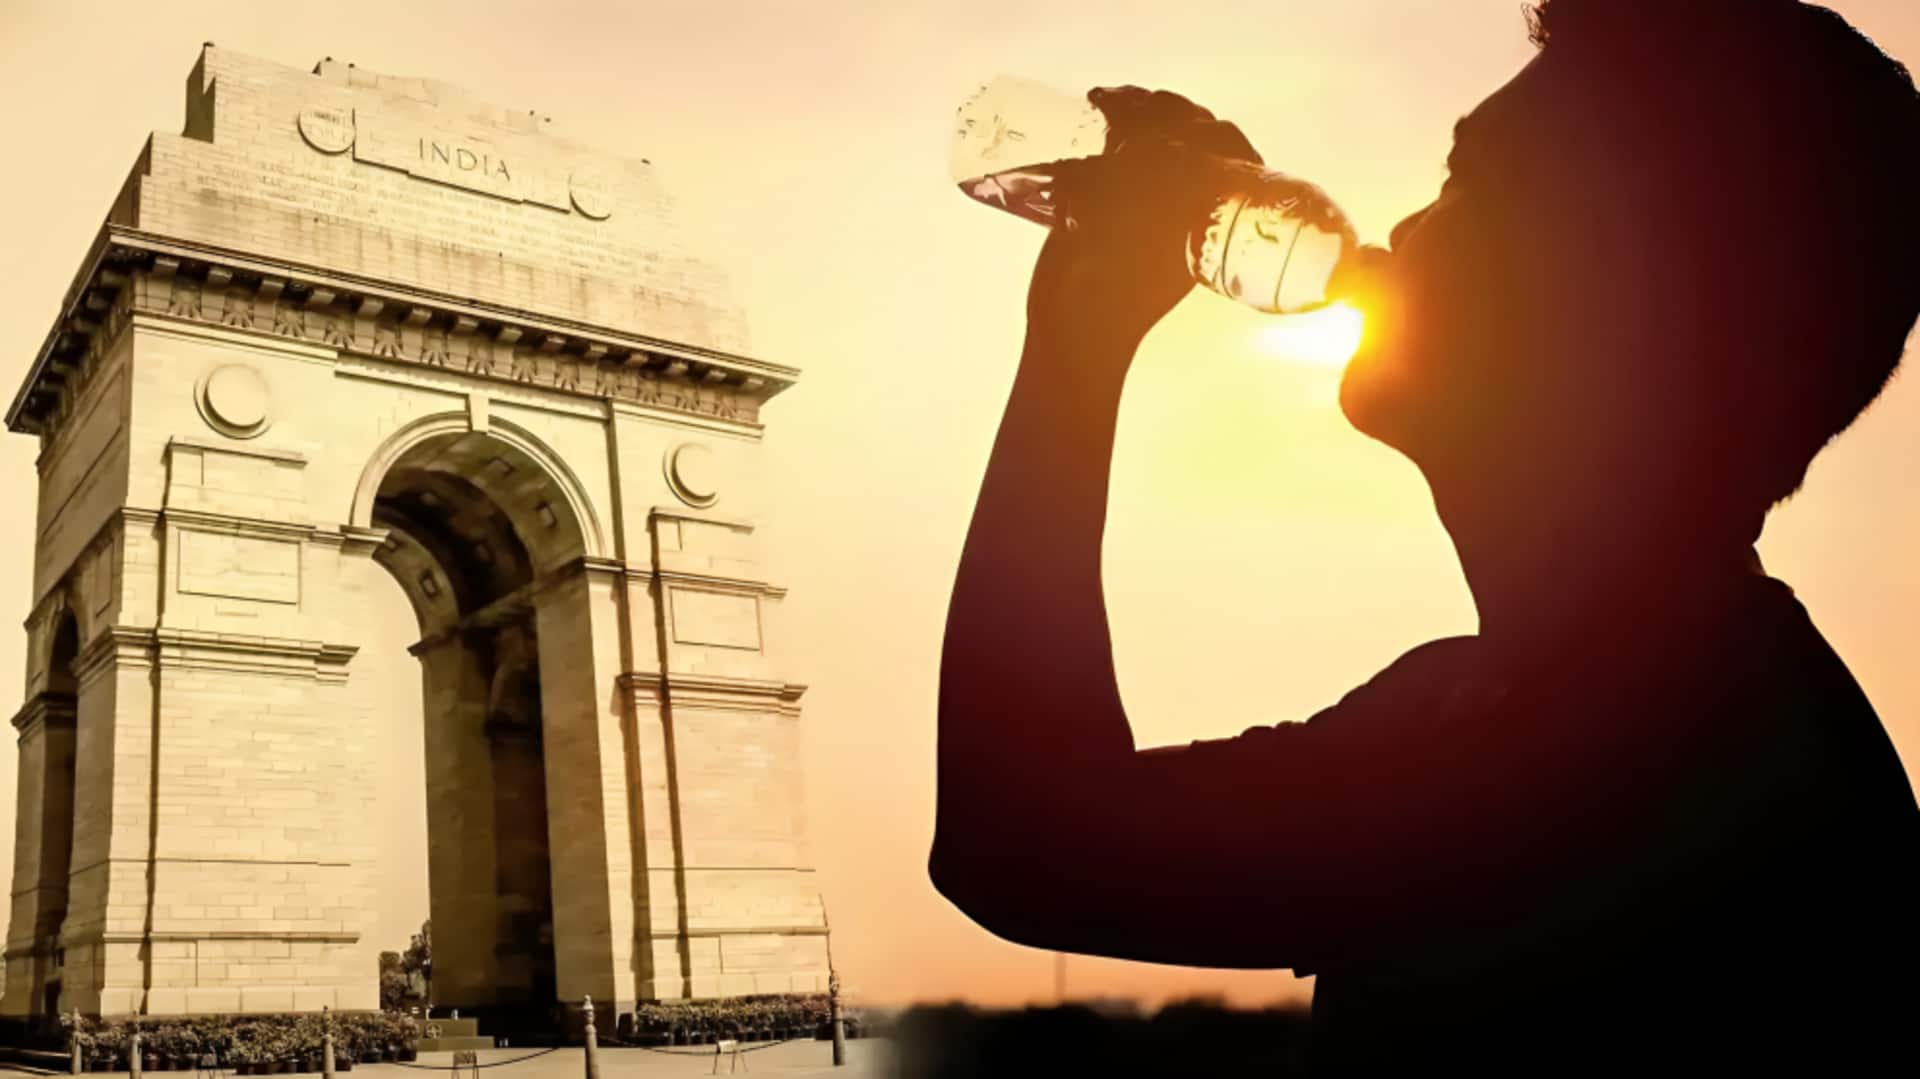 दिल्ली: मार्च में पिछले 4 साल में सबसे कम गर्मी रही; रातें ठंडी, दिन गर्म